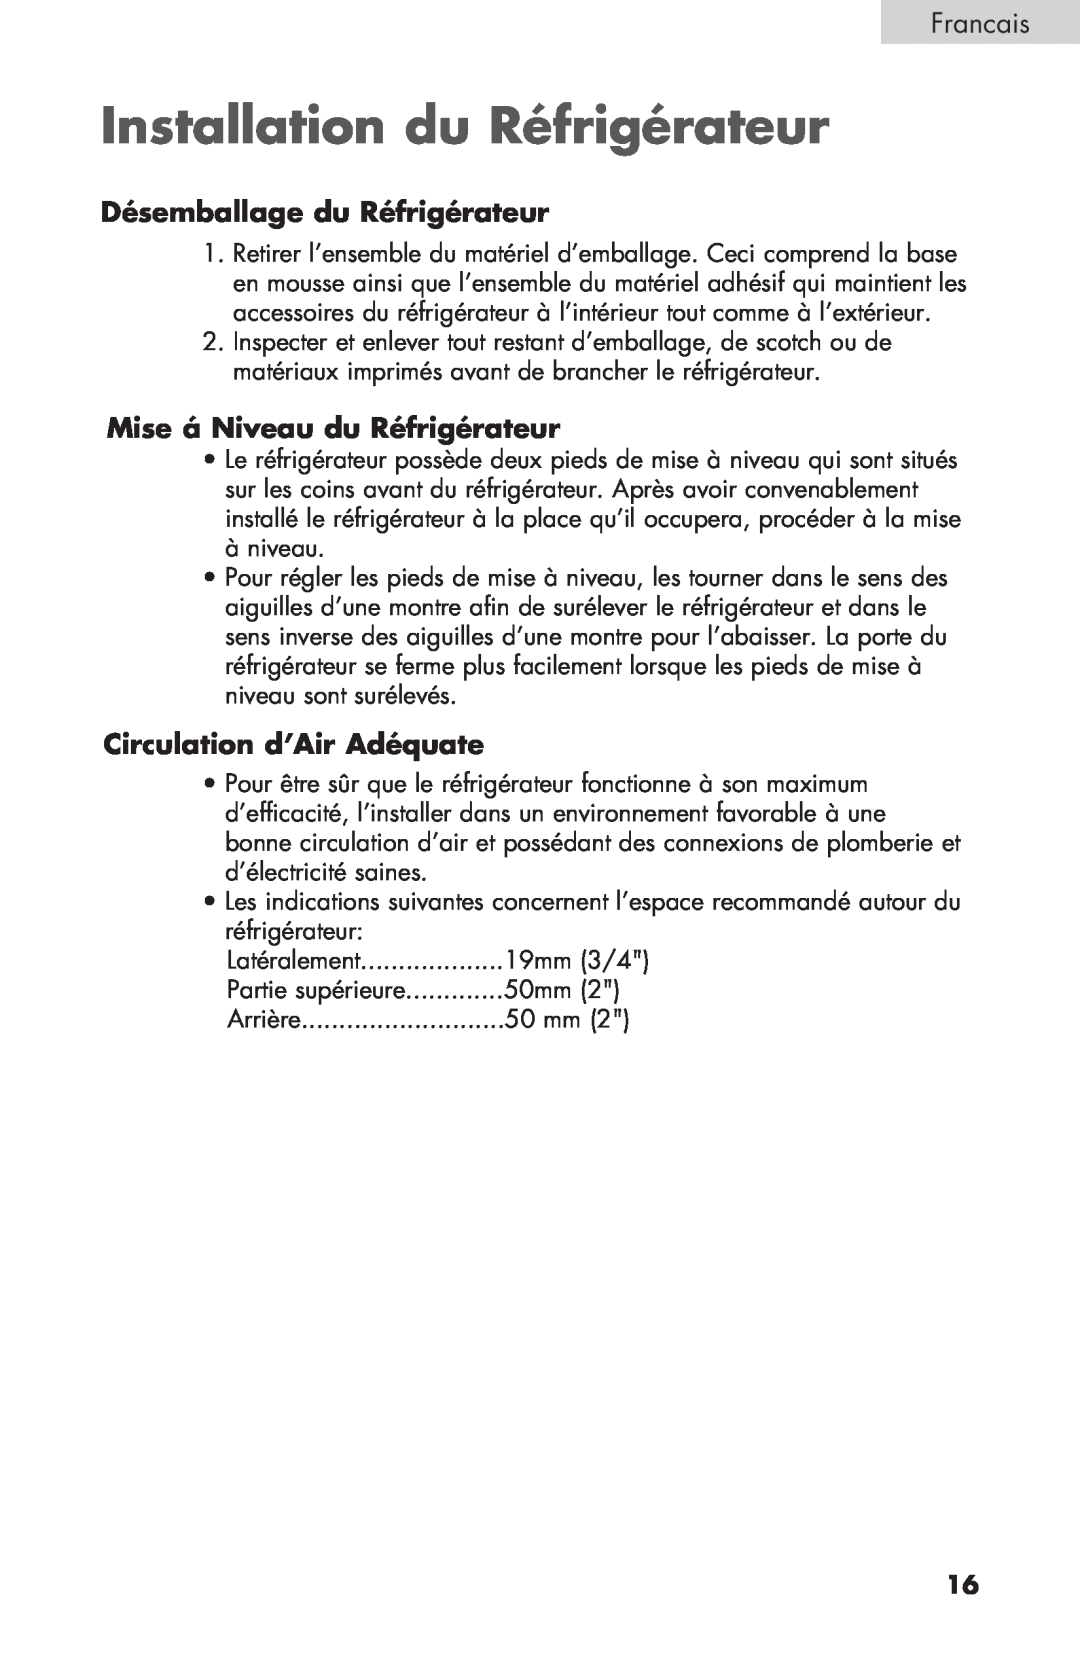 Haier BCF27B manual Installation du Réfrigérateur, Désemballage du Réfrigérateur, Mise á Niveau du Réfrigérateur, Francais 